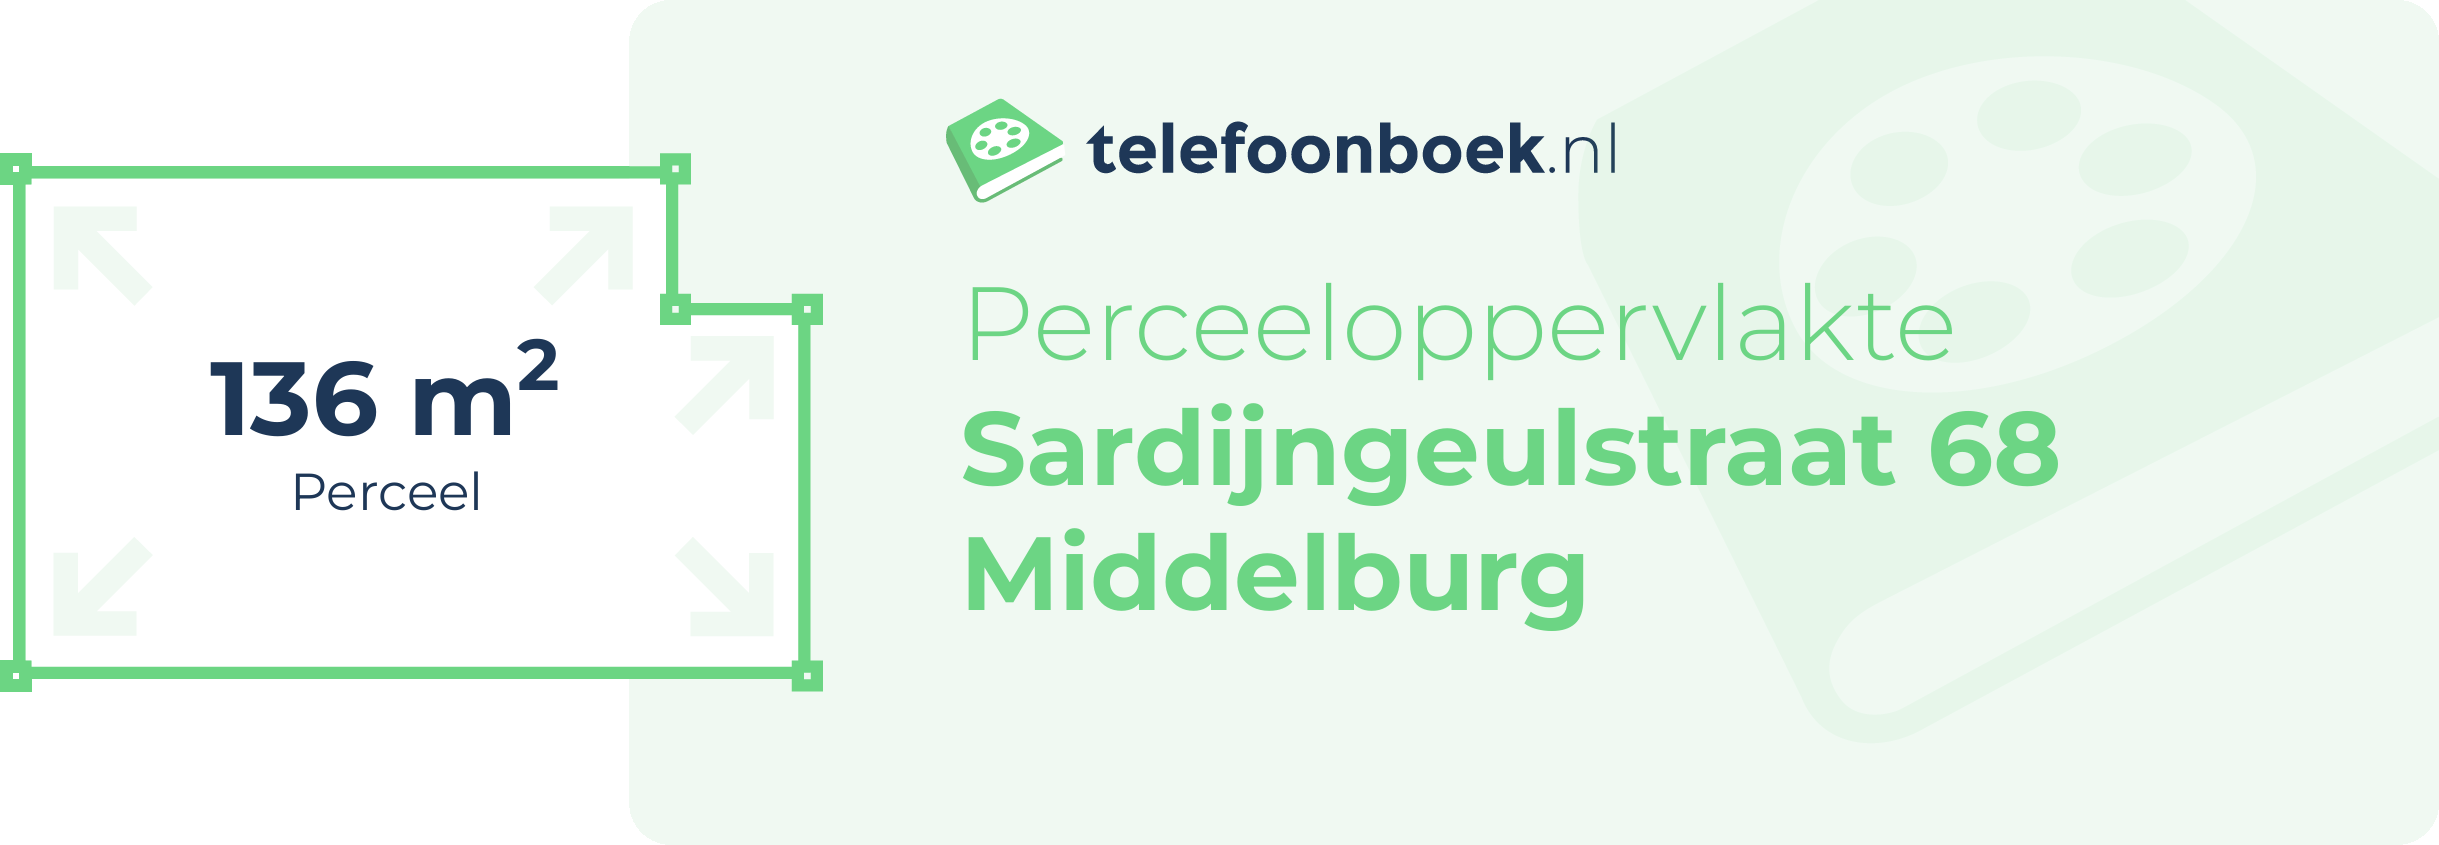 Perceeloppervlakte Sardijngeulstraat 68 Middelburg